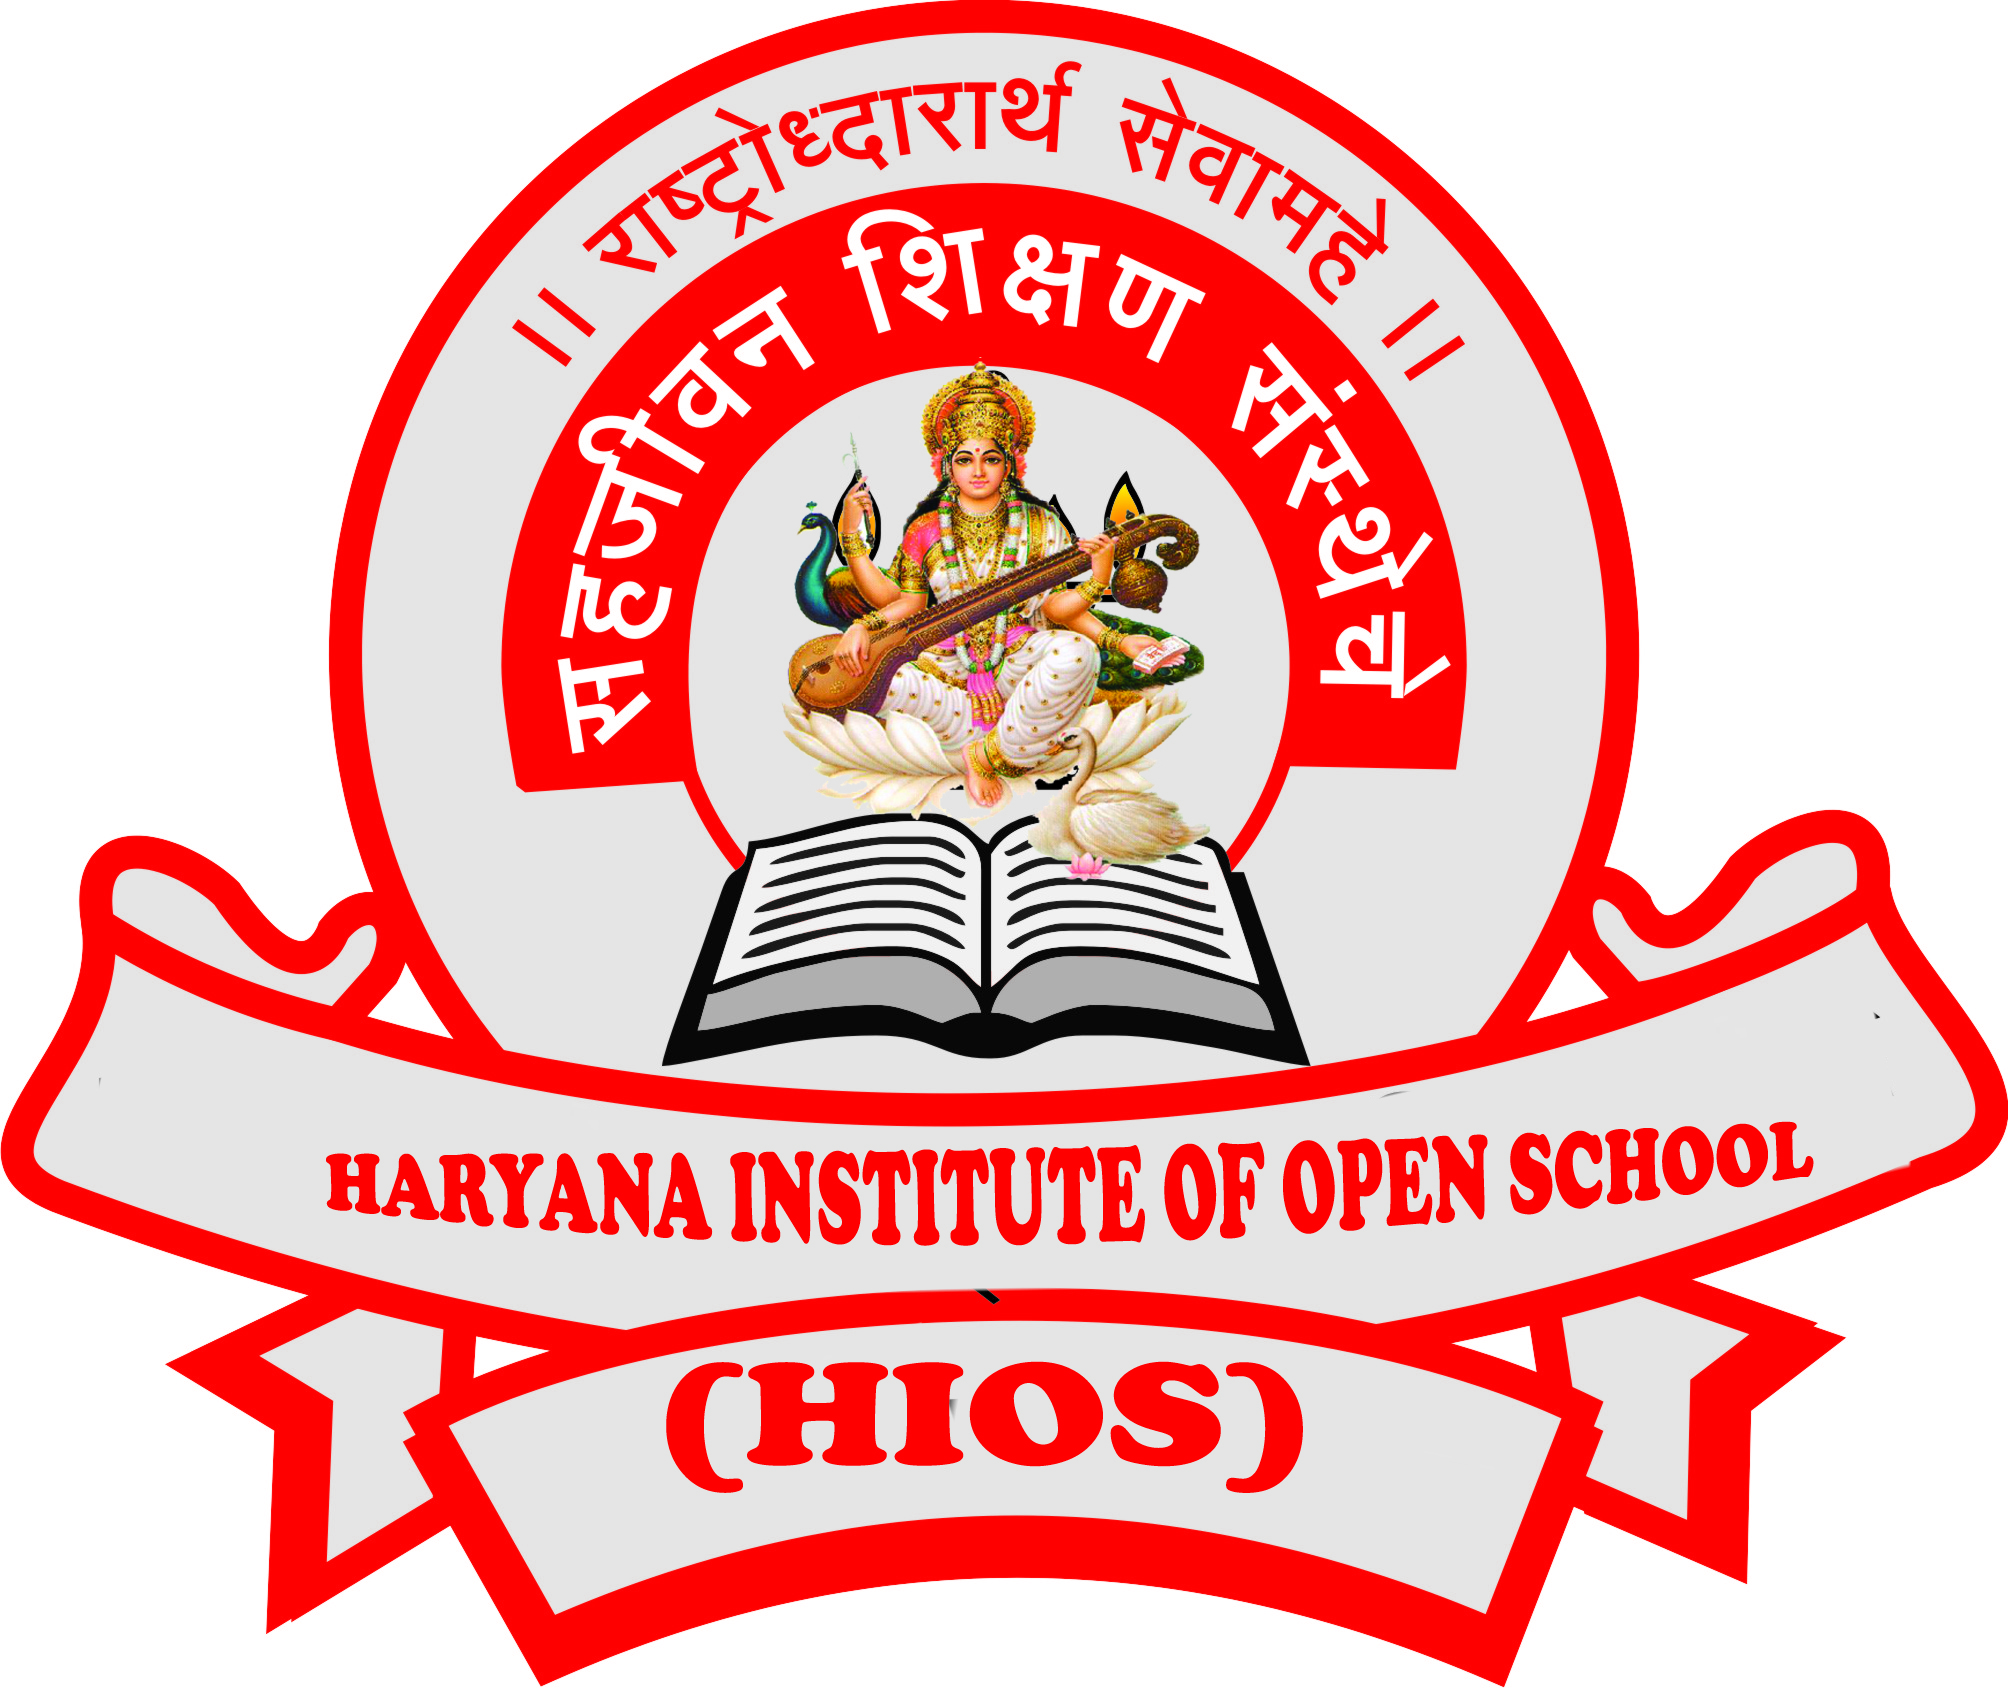 HARYANA INSTITUTE OF OPEN SCHOOL